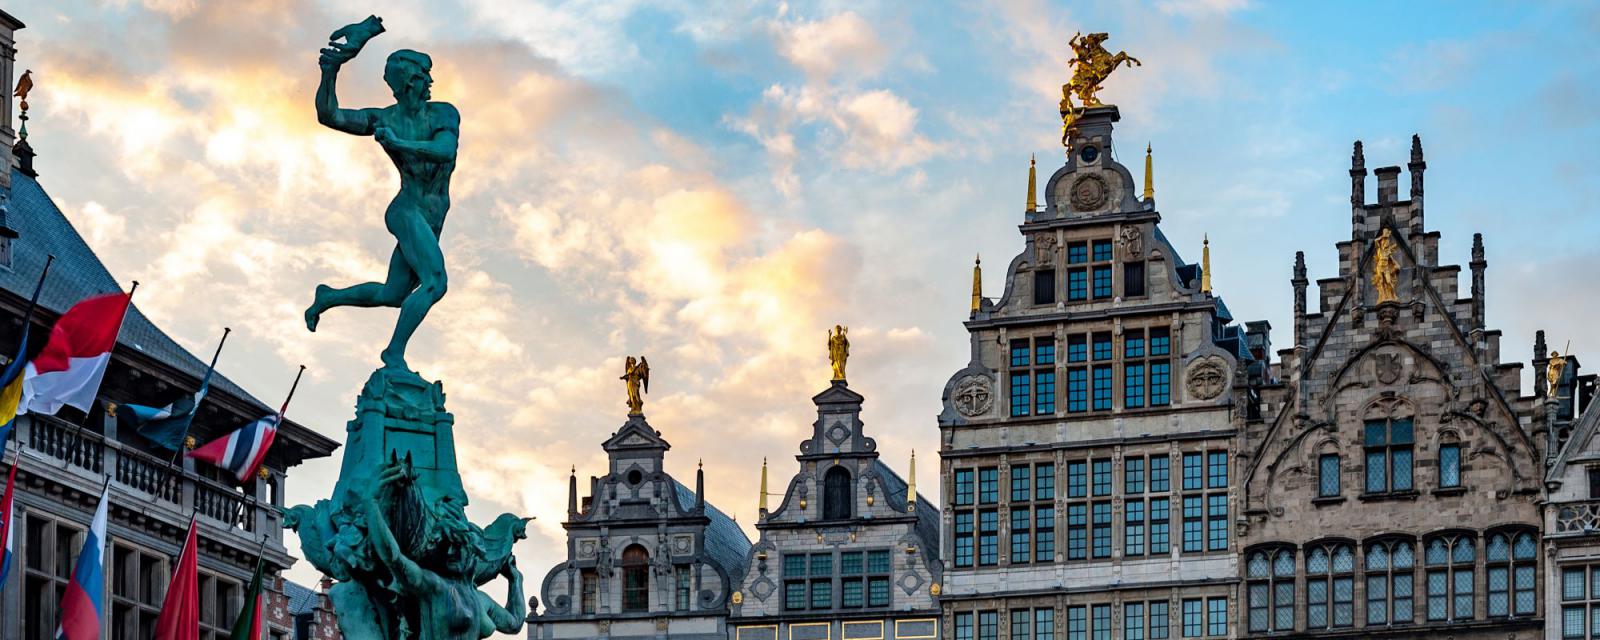 Zomer 2020: Antwerpen brengt een gevarieerd cultuurprogramma 